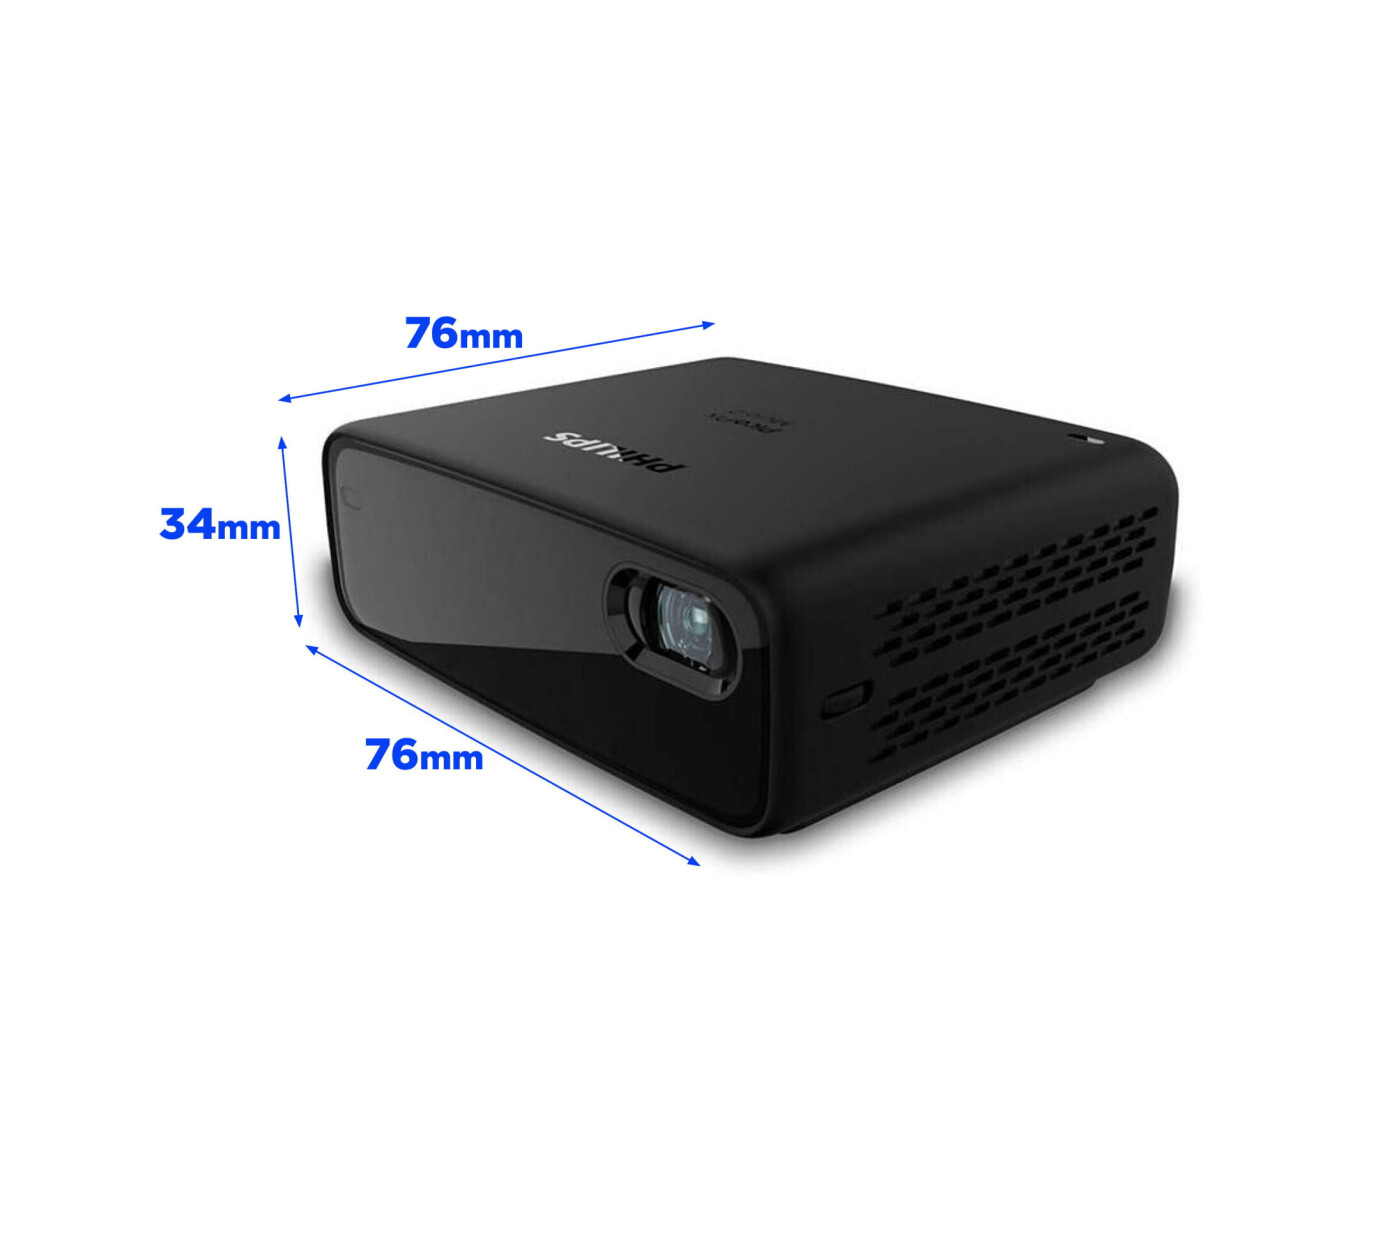 Vorschau: Philips PicoPix Micro 2 Mini LED Beamer mit WVGA Auflösung - Demo